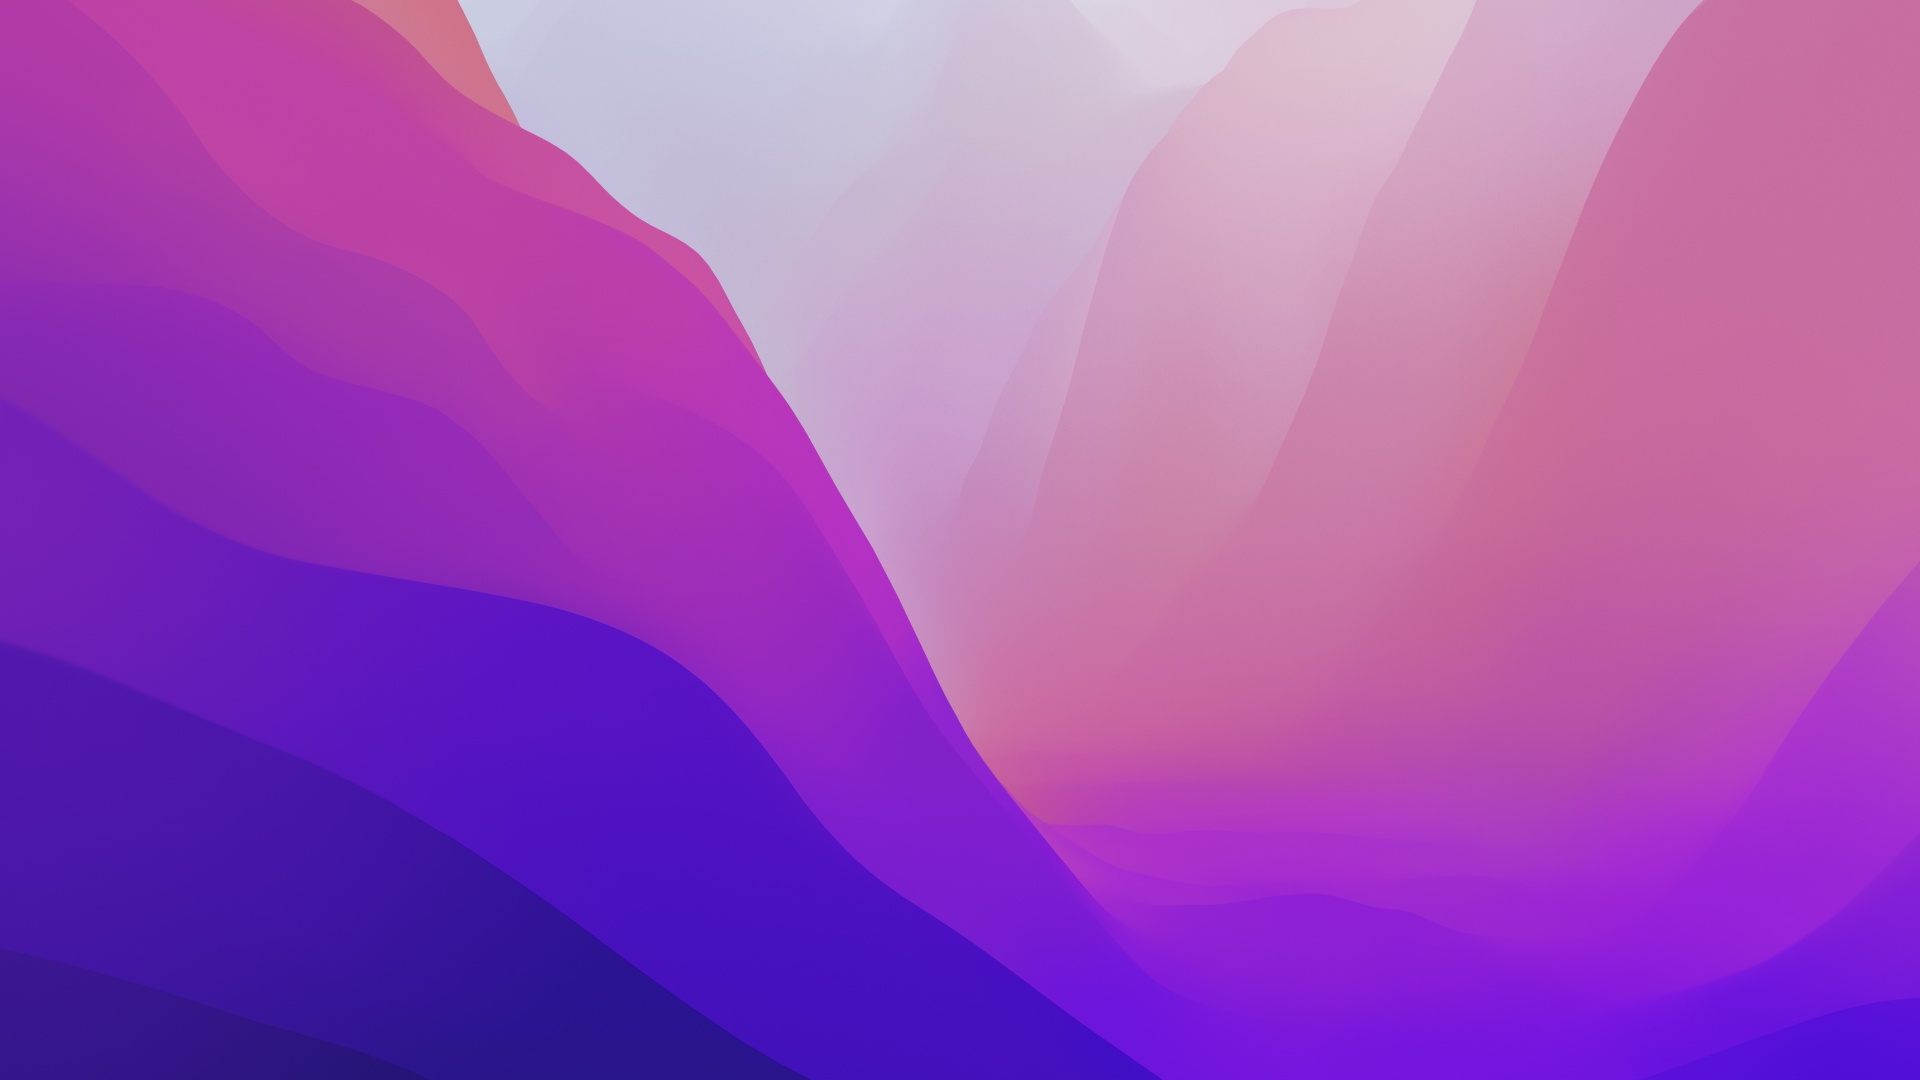 Bạn đã sẵn sàng cập nhật cho mình một chiếc máy tính mới? Hãy trang trí cho màn hình của bạn với hình nền macOS Monterey màu tím độc đáo, tuyệt đẹp. Với hiệu ứng gradient tinh tế và khả năng tương thích tốt, hình nền này sẽ làm cho bất kỳ màn hình nào trông đẹp hơn.